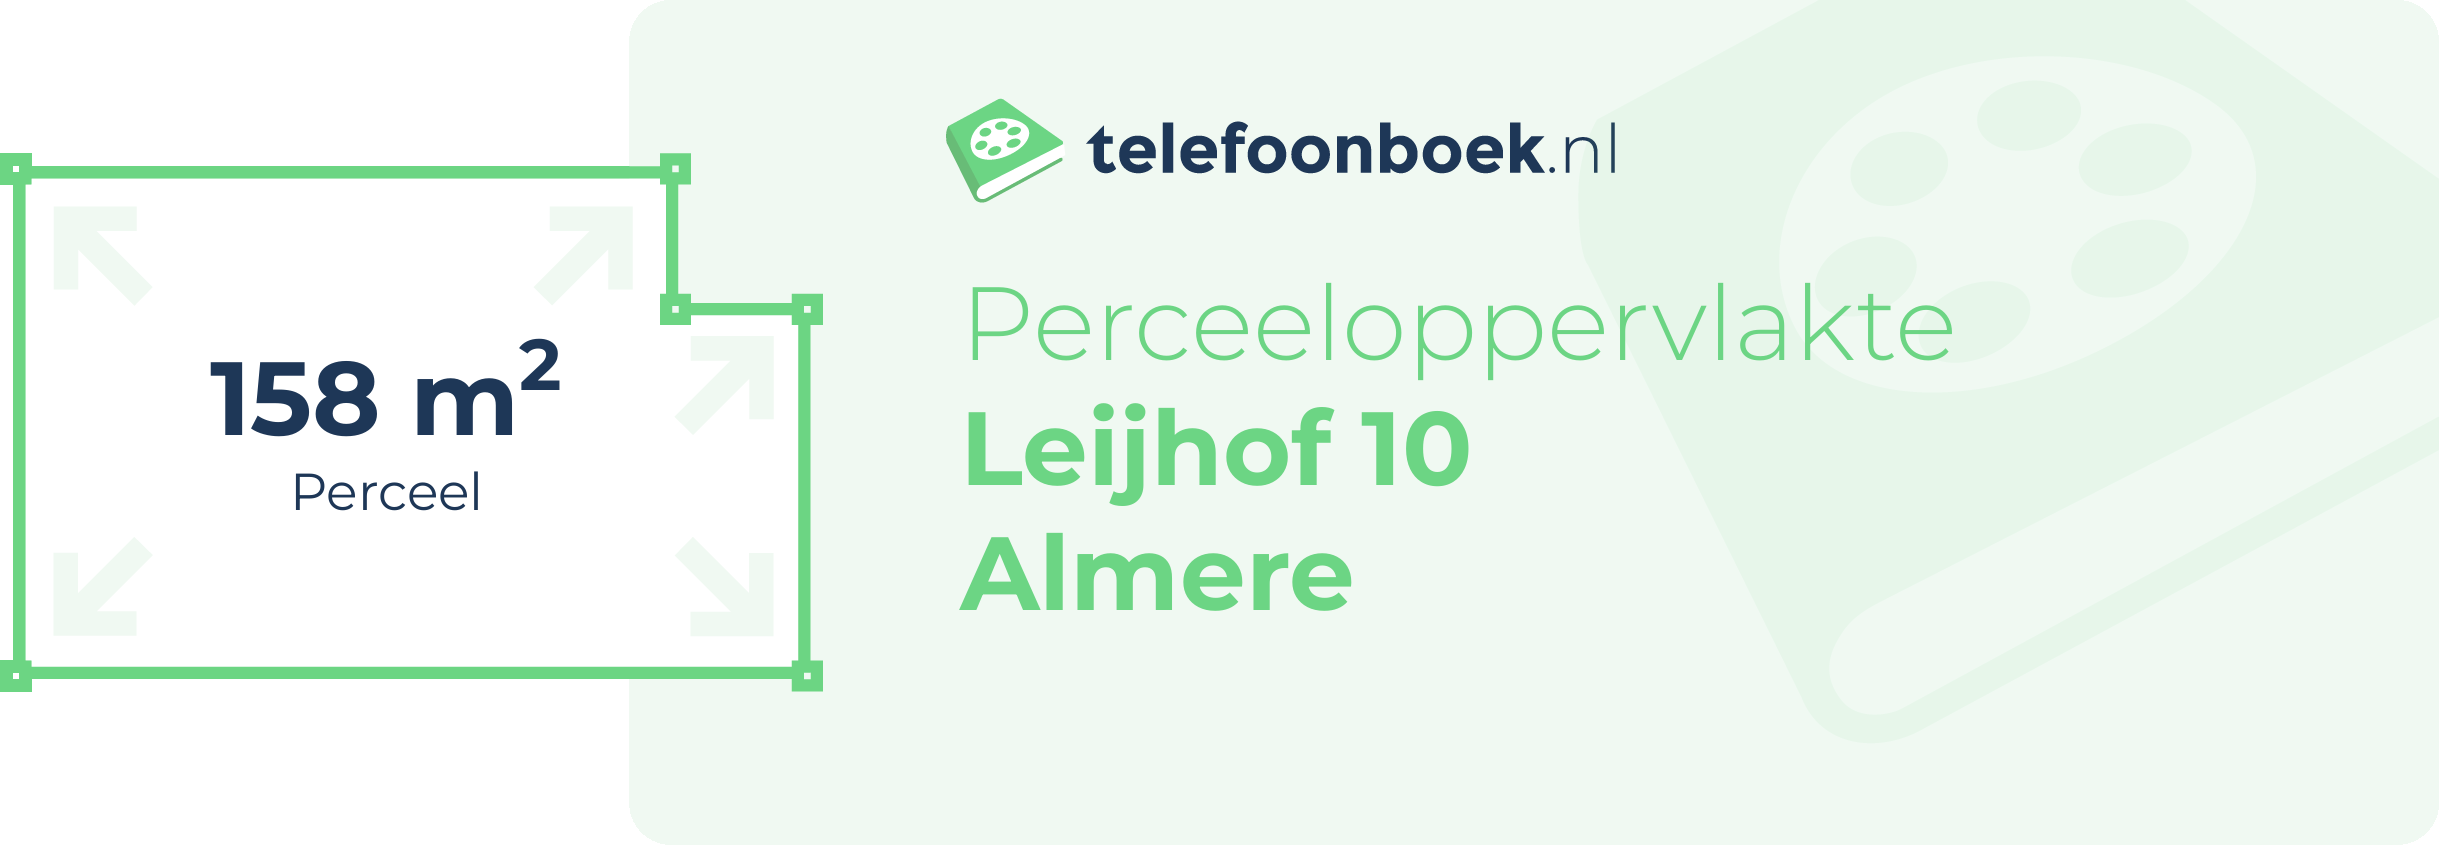 Perceeloppervlakte Leijhof 10 Almere